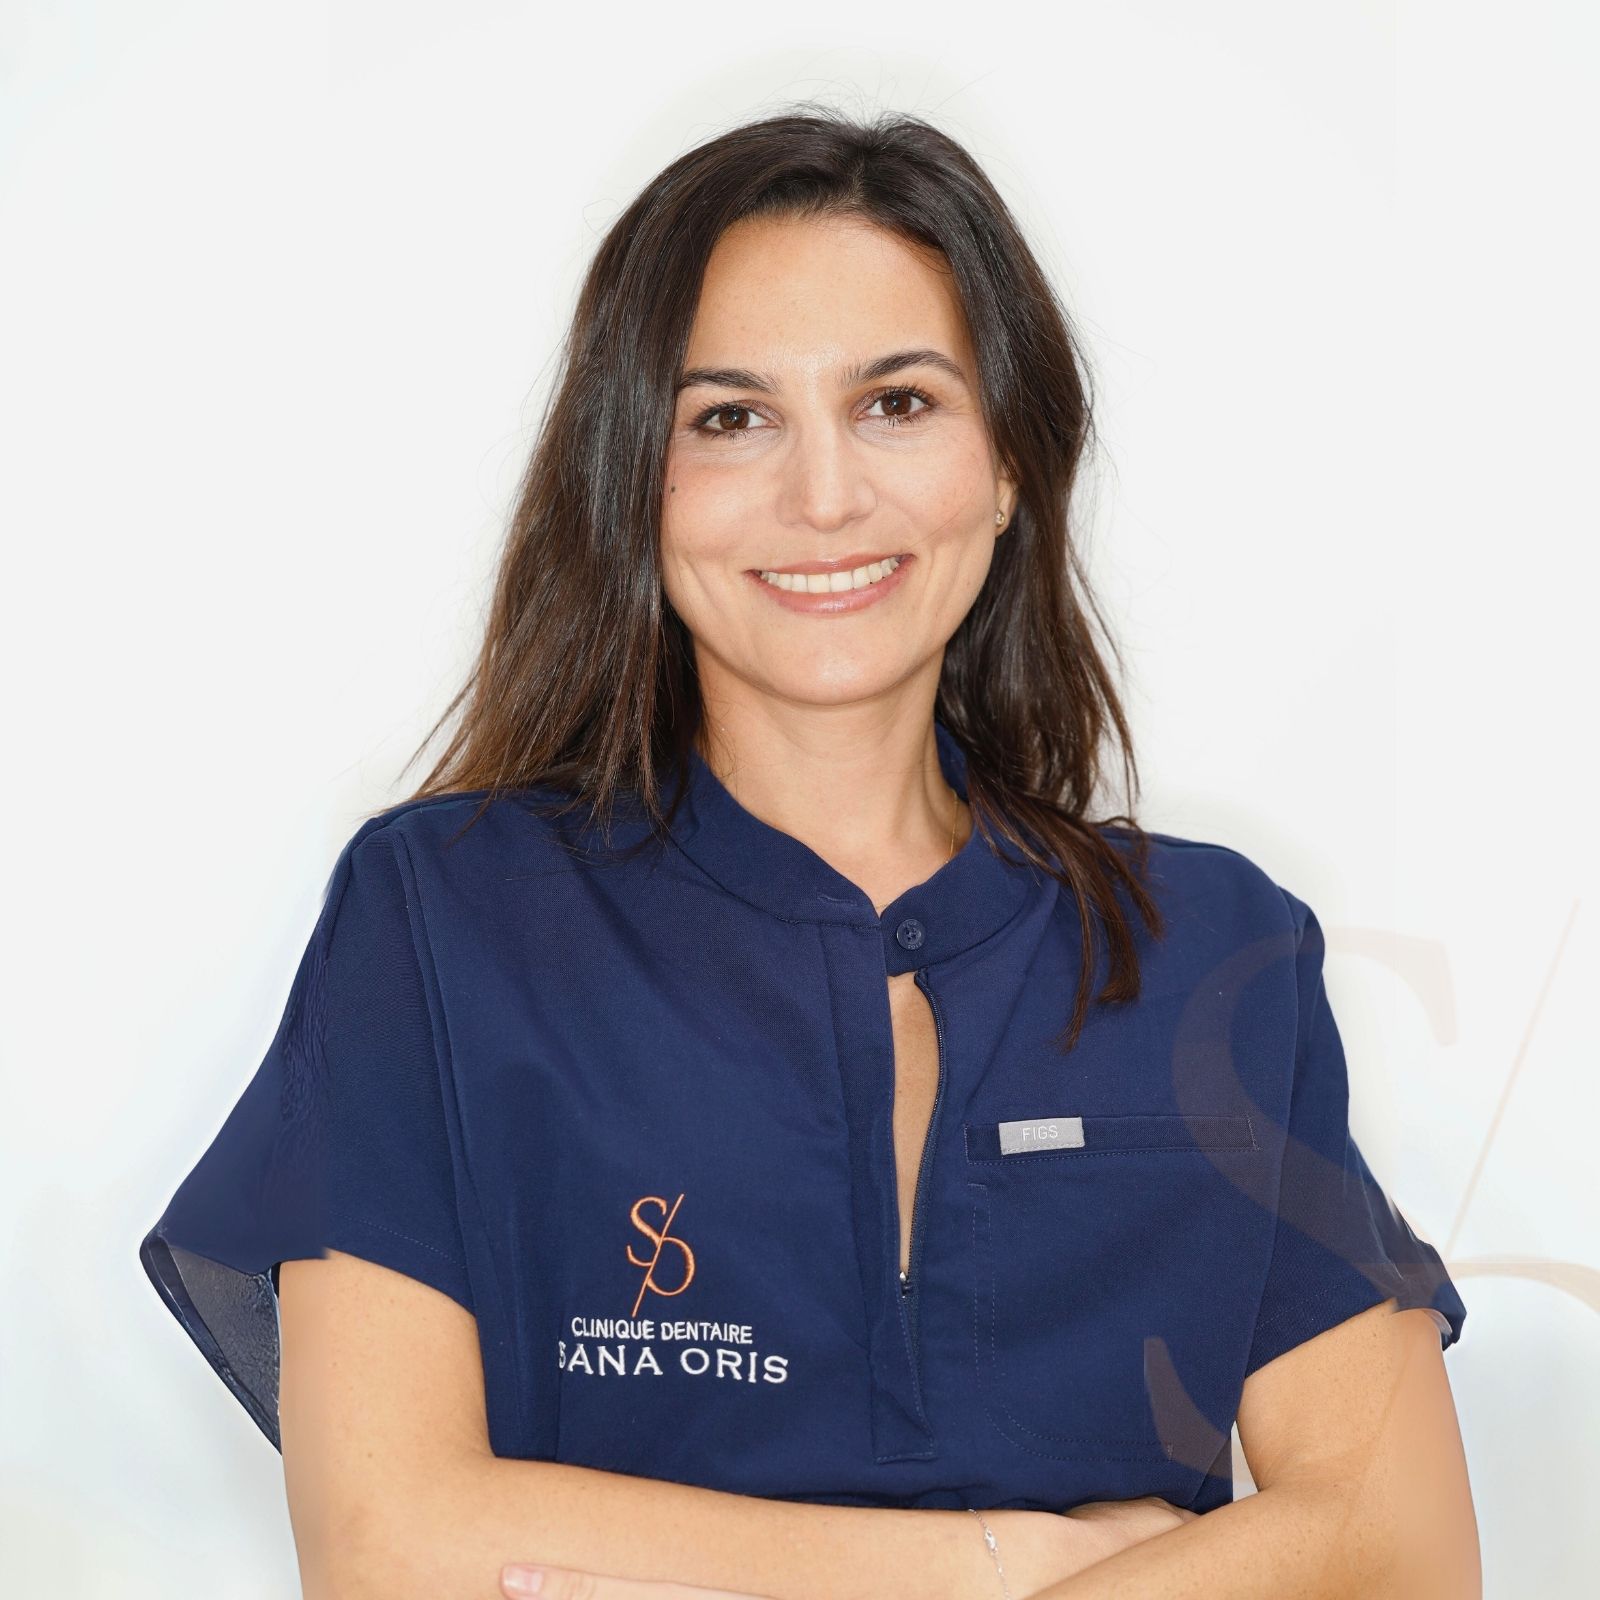 Dr Andre | Equipe médicale | Clinique dentaire Sana Oris du Marais | Chirurgiens dentistes | Paris 4